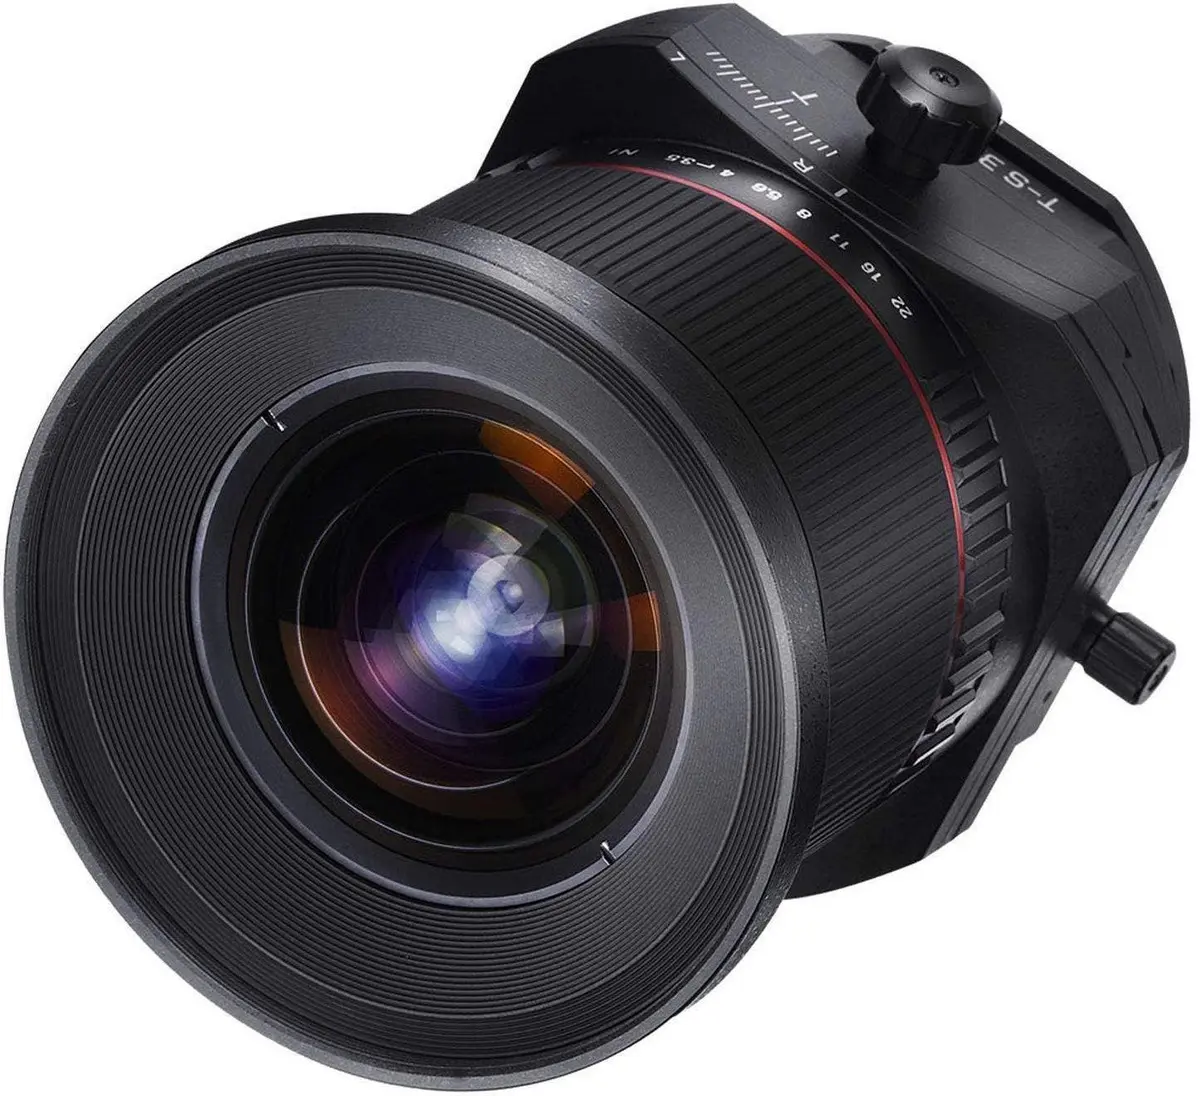 2. Samyang T-S 24mm f/3.5 ED AS UMC (Sony E-mount) Lens